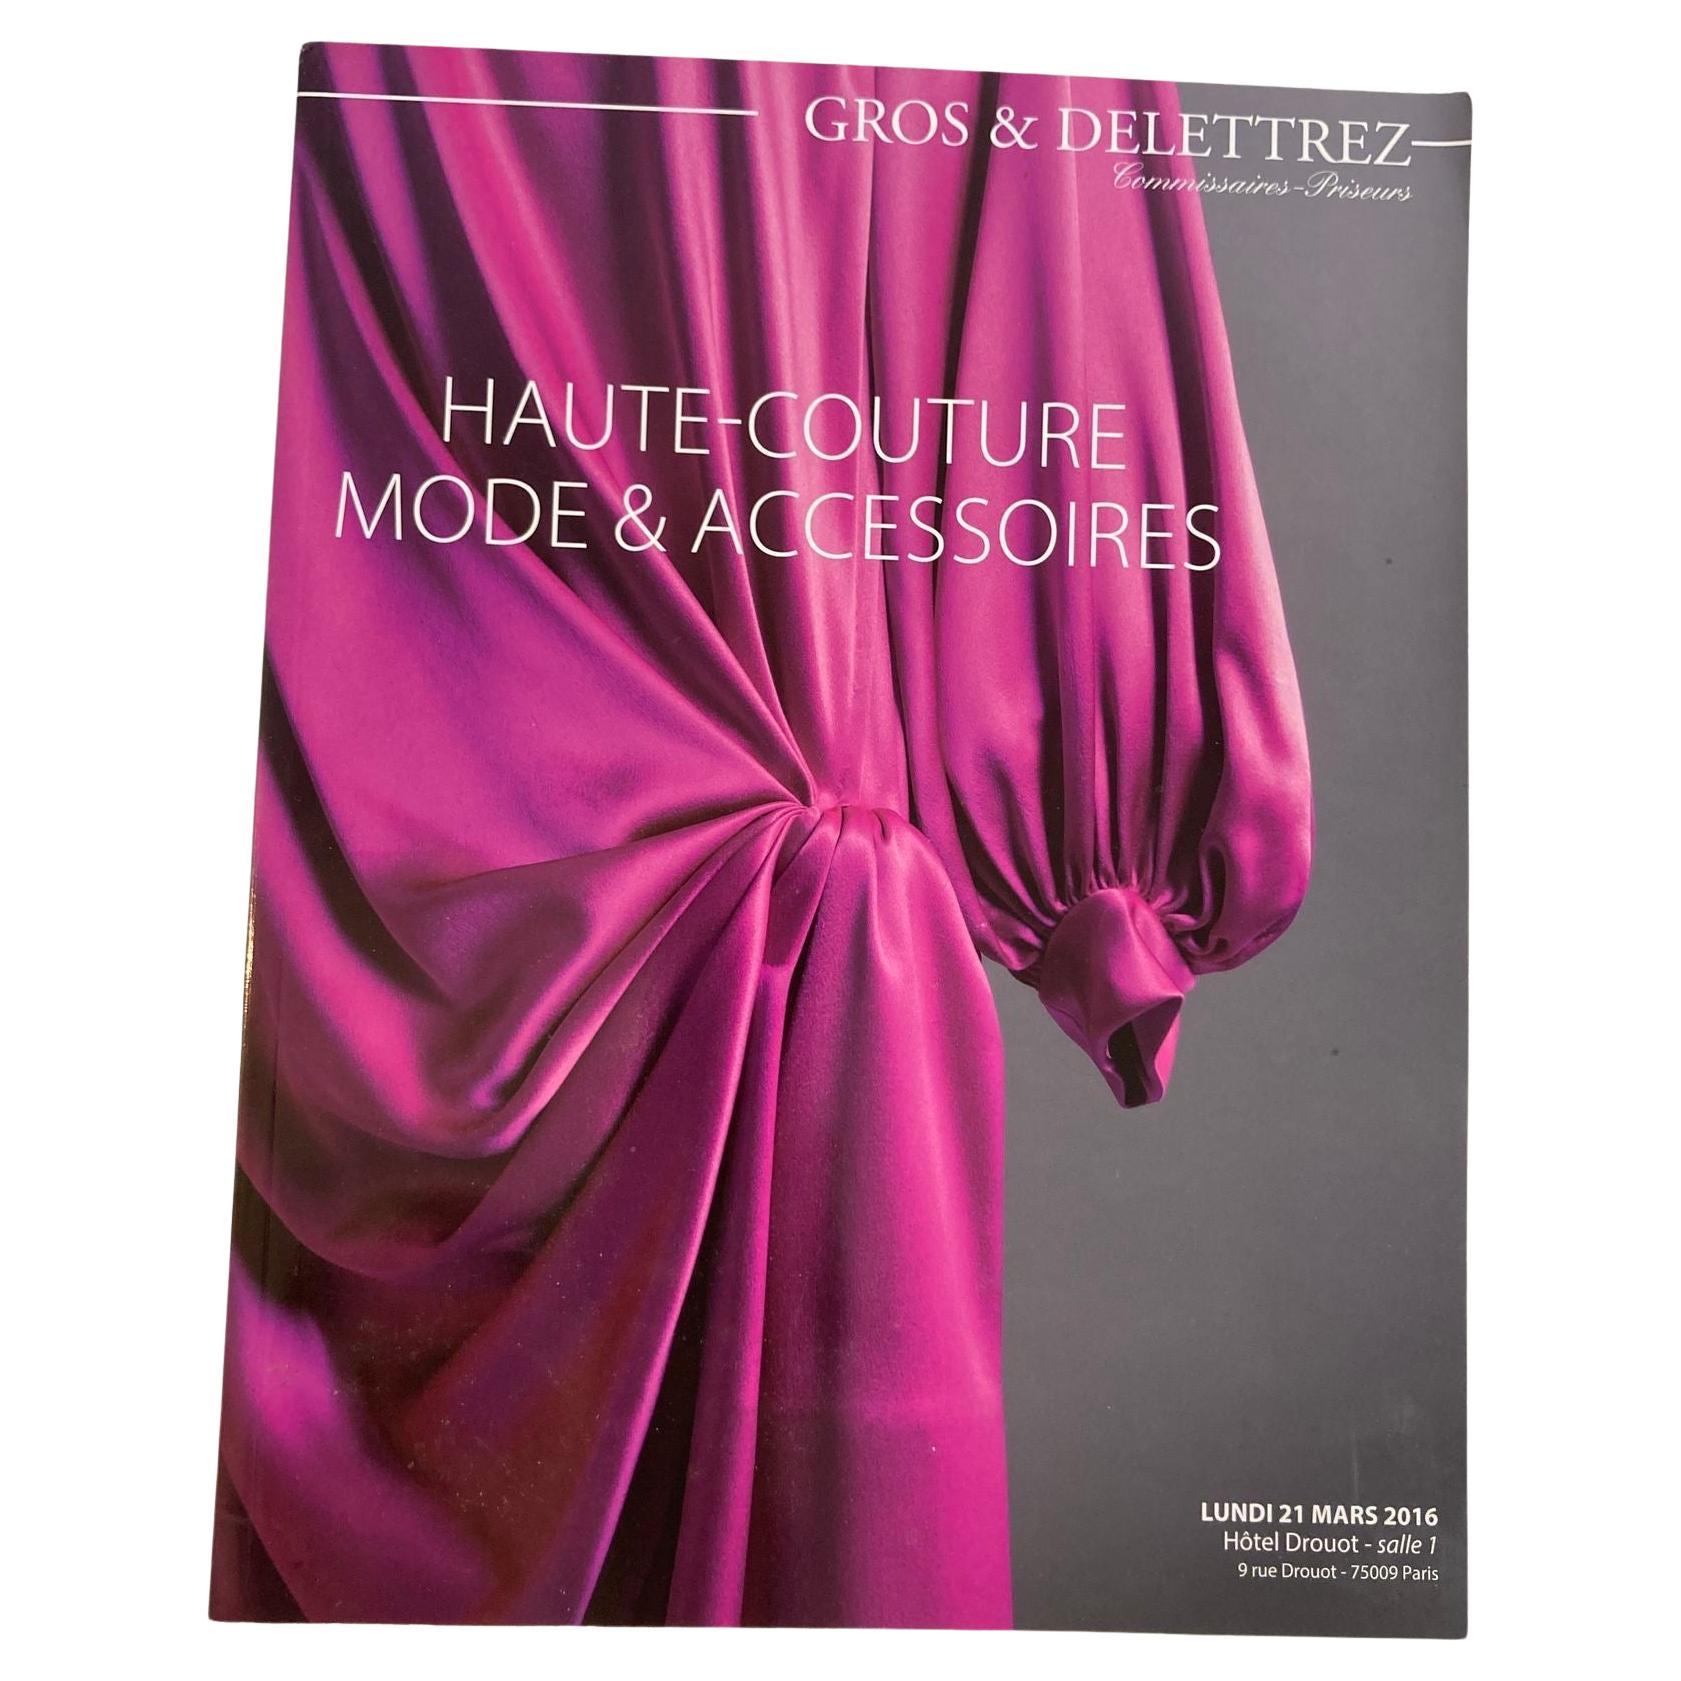 Catalogue des ventes aux enchères de la Haute Couture Paris 2016 publié par Gros & Delettrez en vente